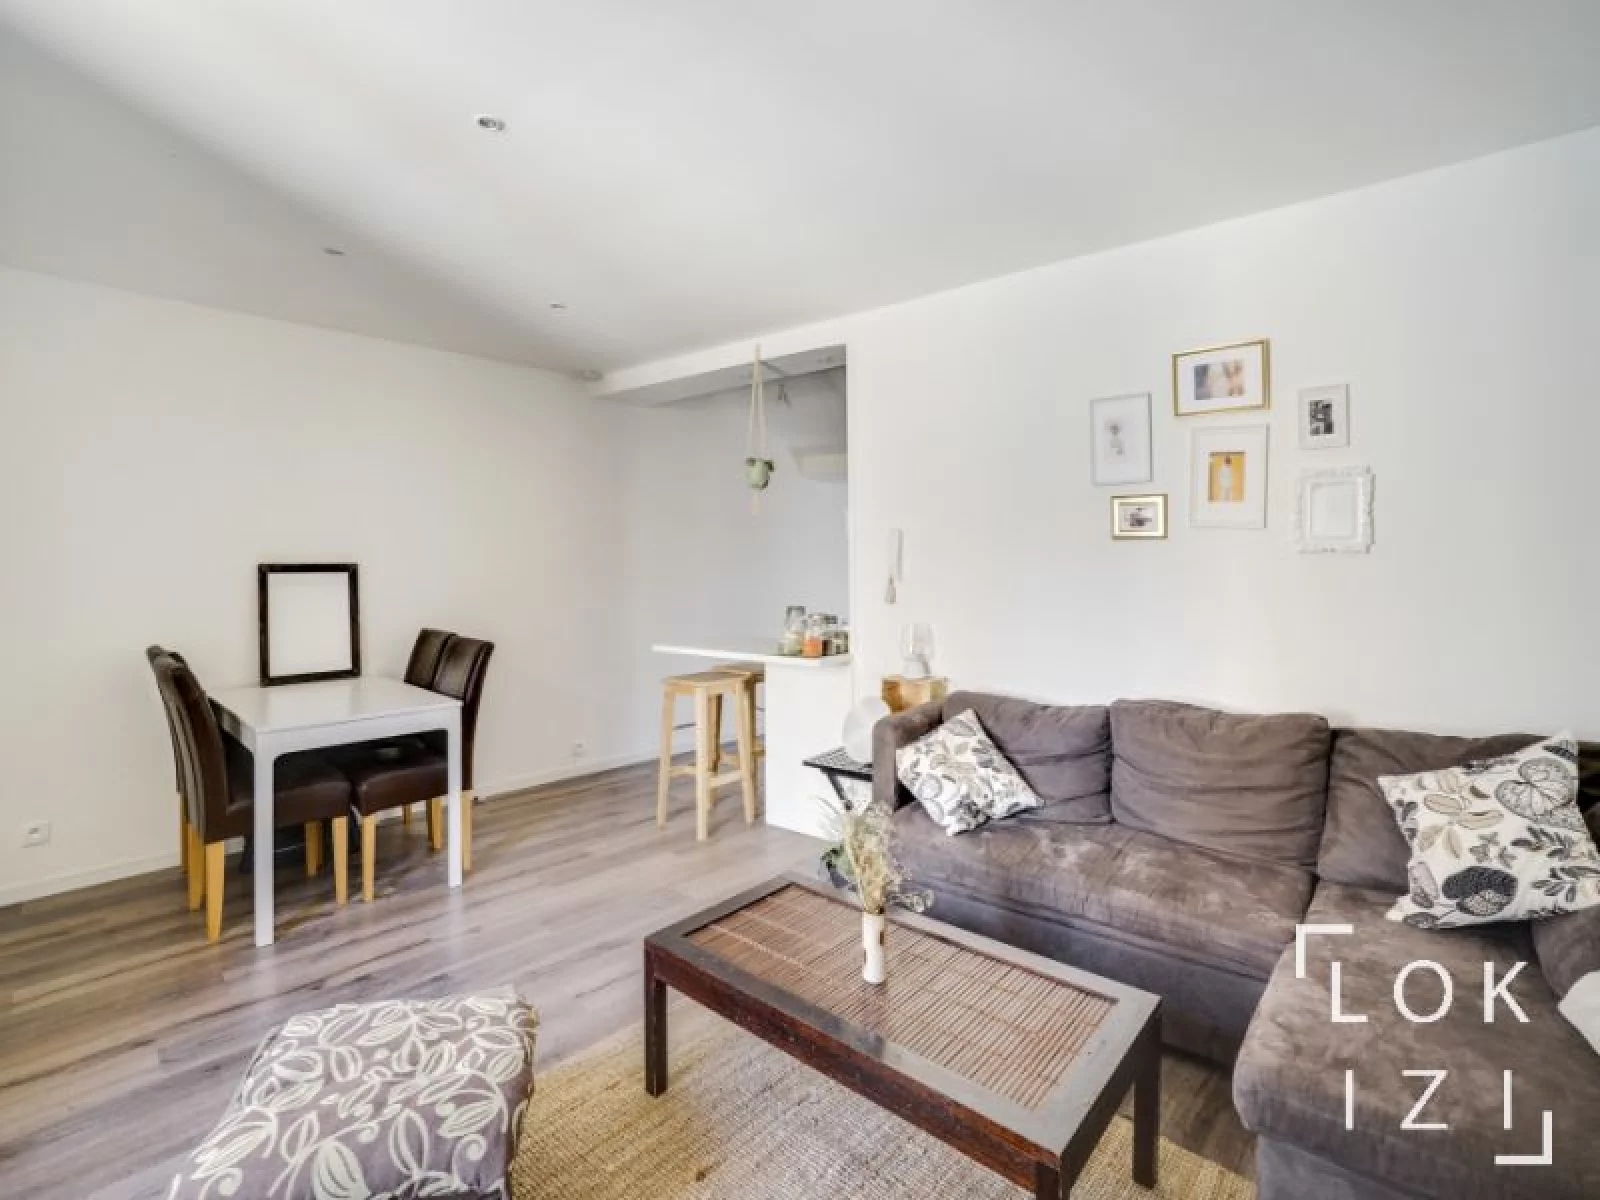 Location appartement meublé 2 pièces de 36m² (Bordeaux centre - Bourse)